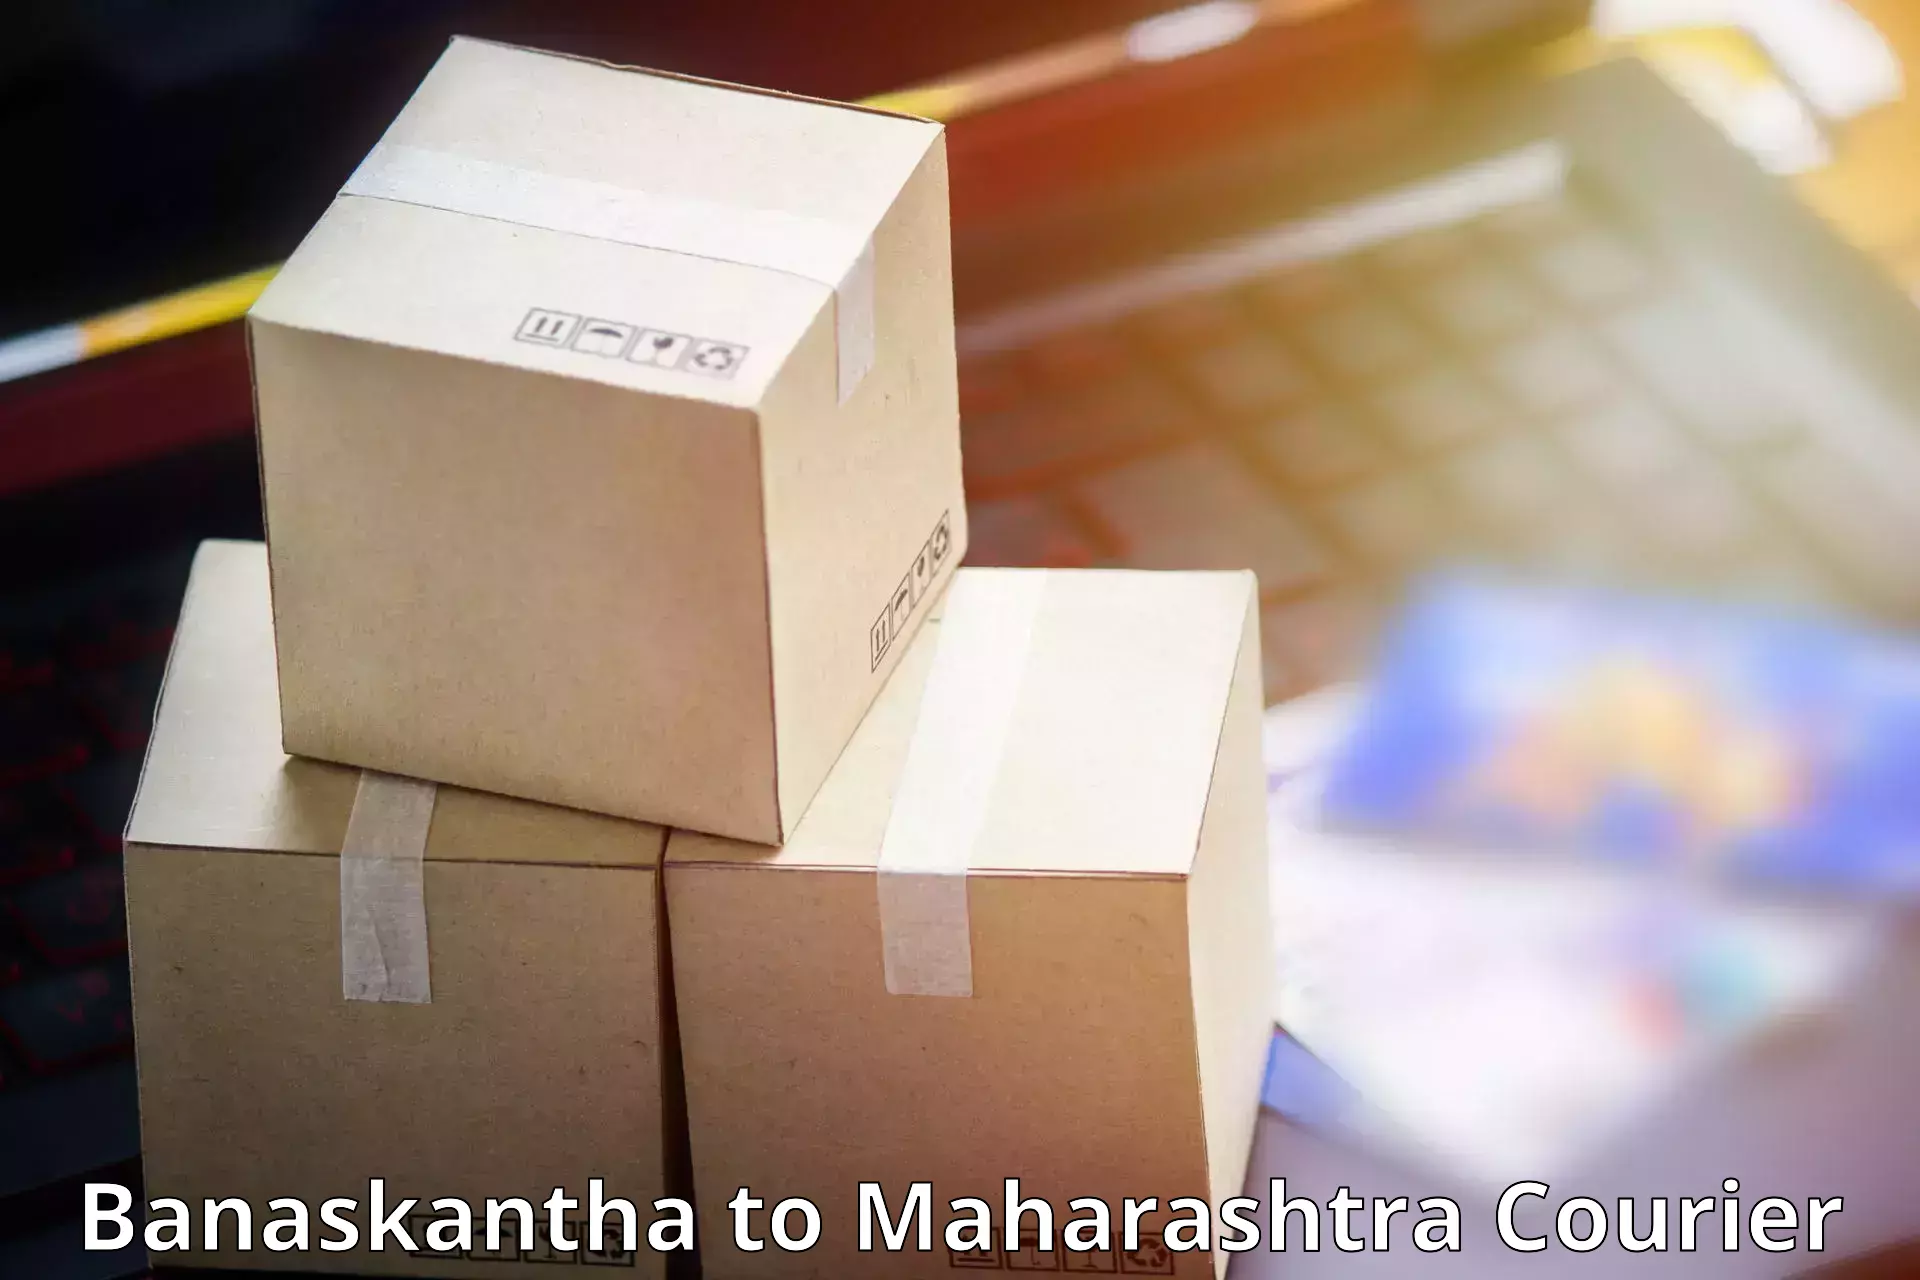 Door-to-door freight service Banaskantha to Akkalkot